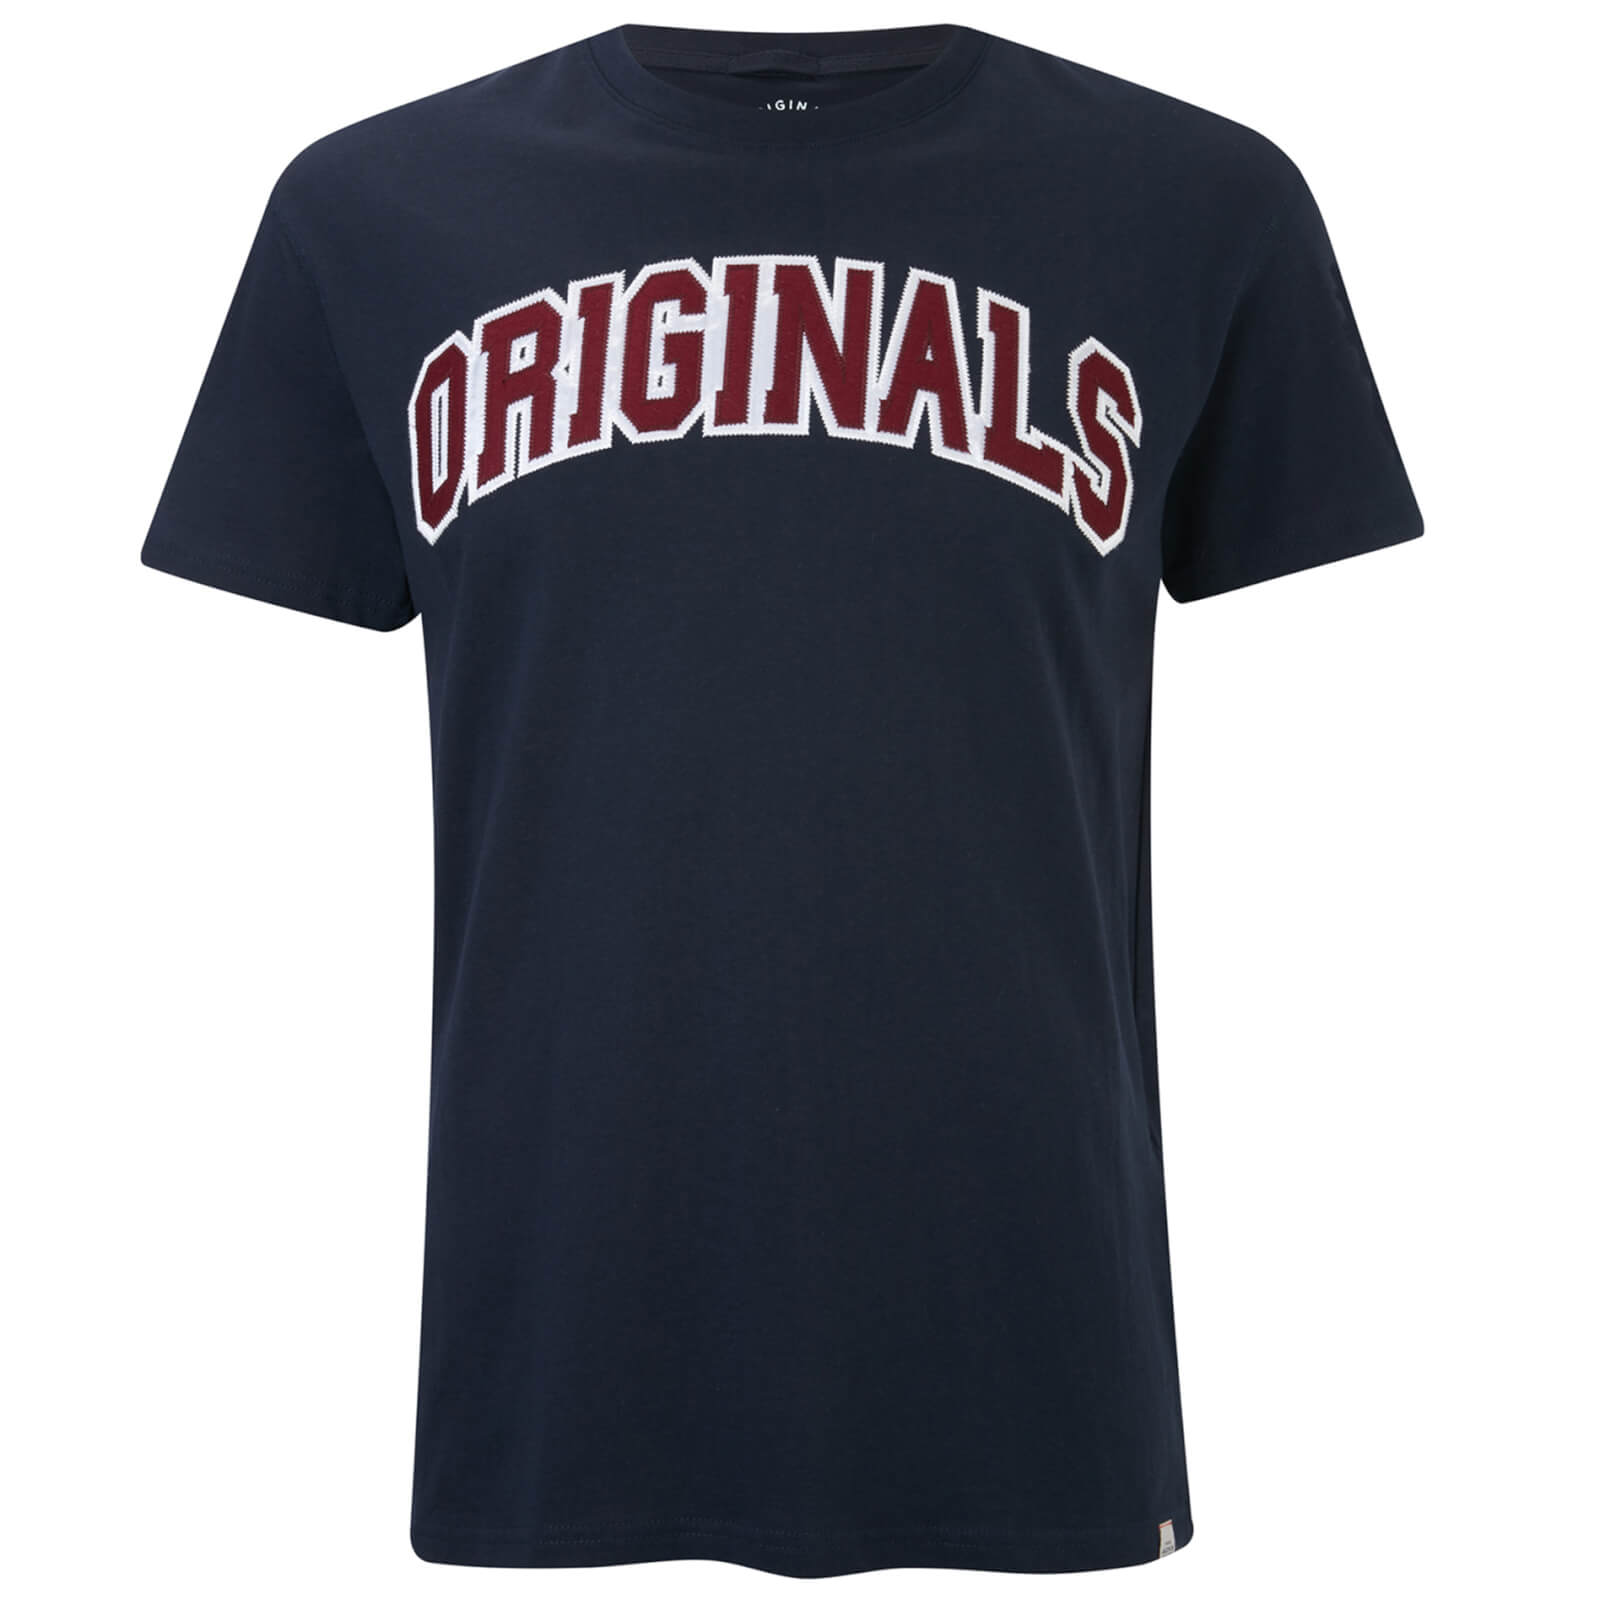 Jack & Jones Originals Men%27s Urbia T-Shirt - Total Eclipse - XL